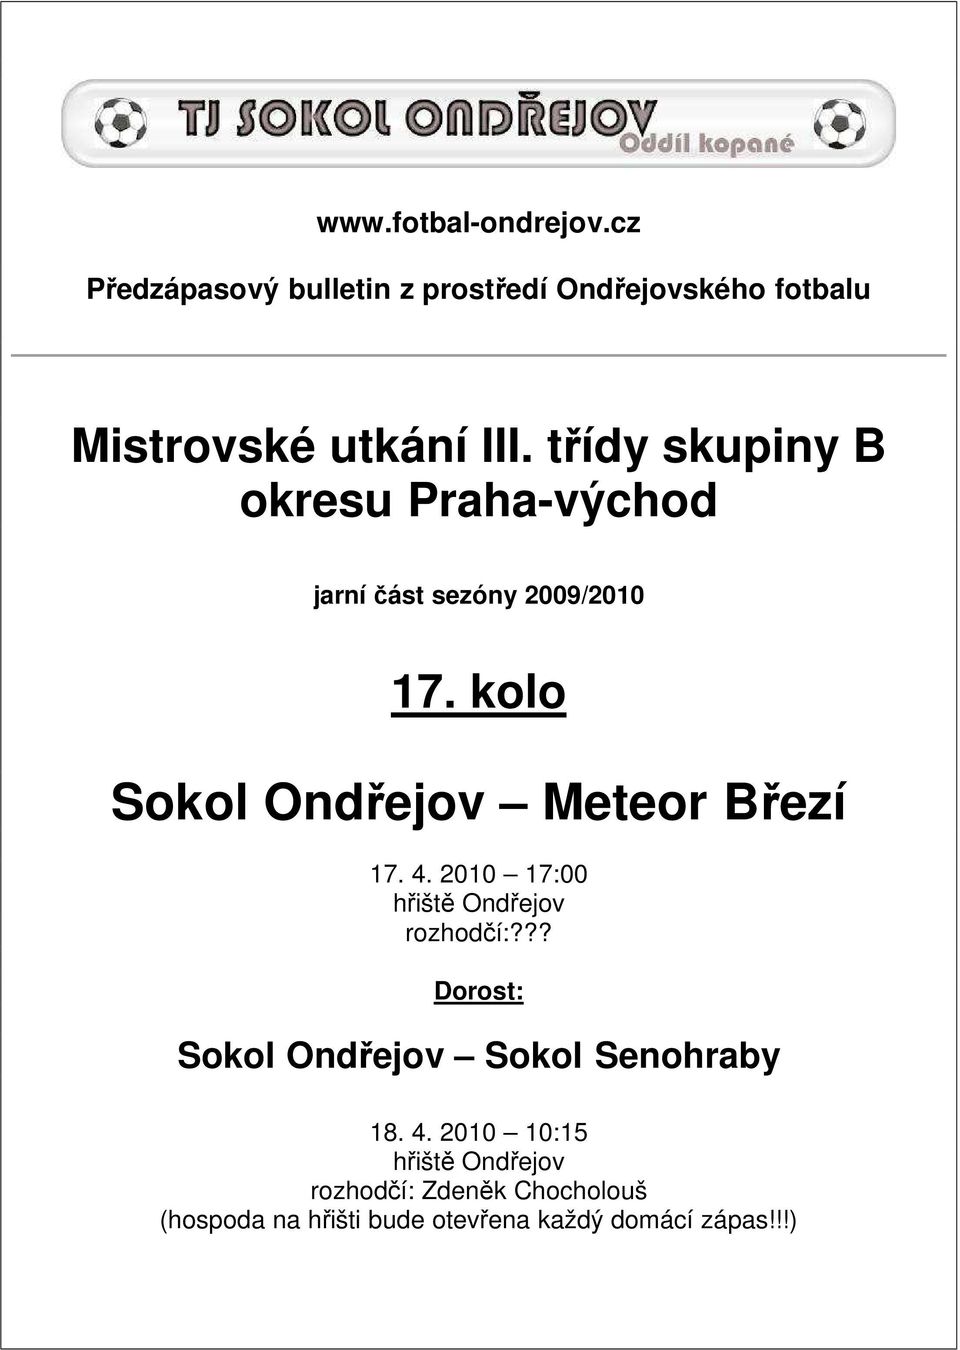 kolo Sokol Ondřejov Meteor Březí 17. 4. 2010 17:00 hřiště Ondřejov rozhodčí:?